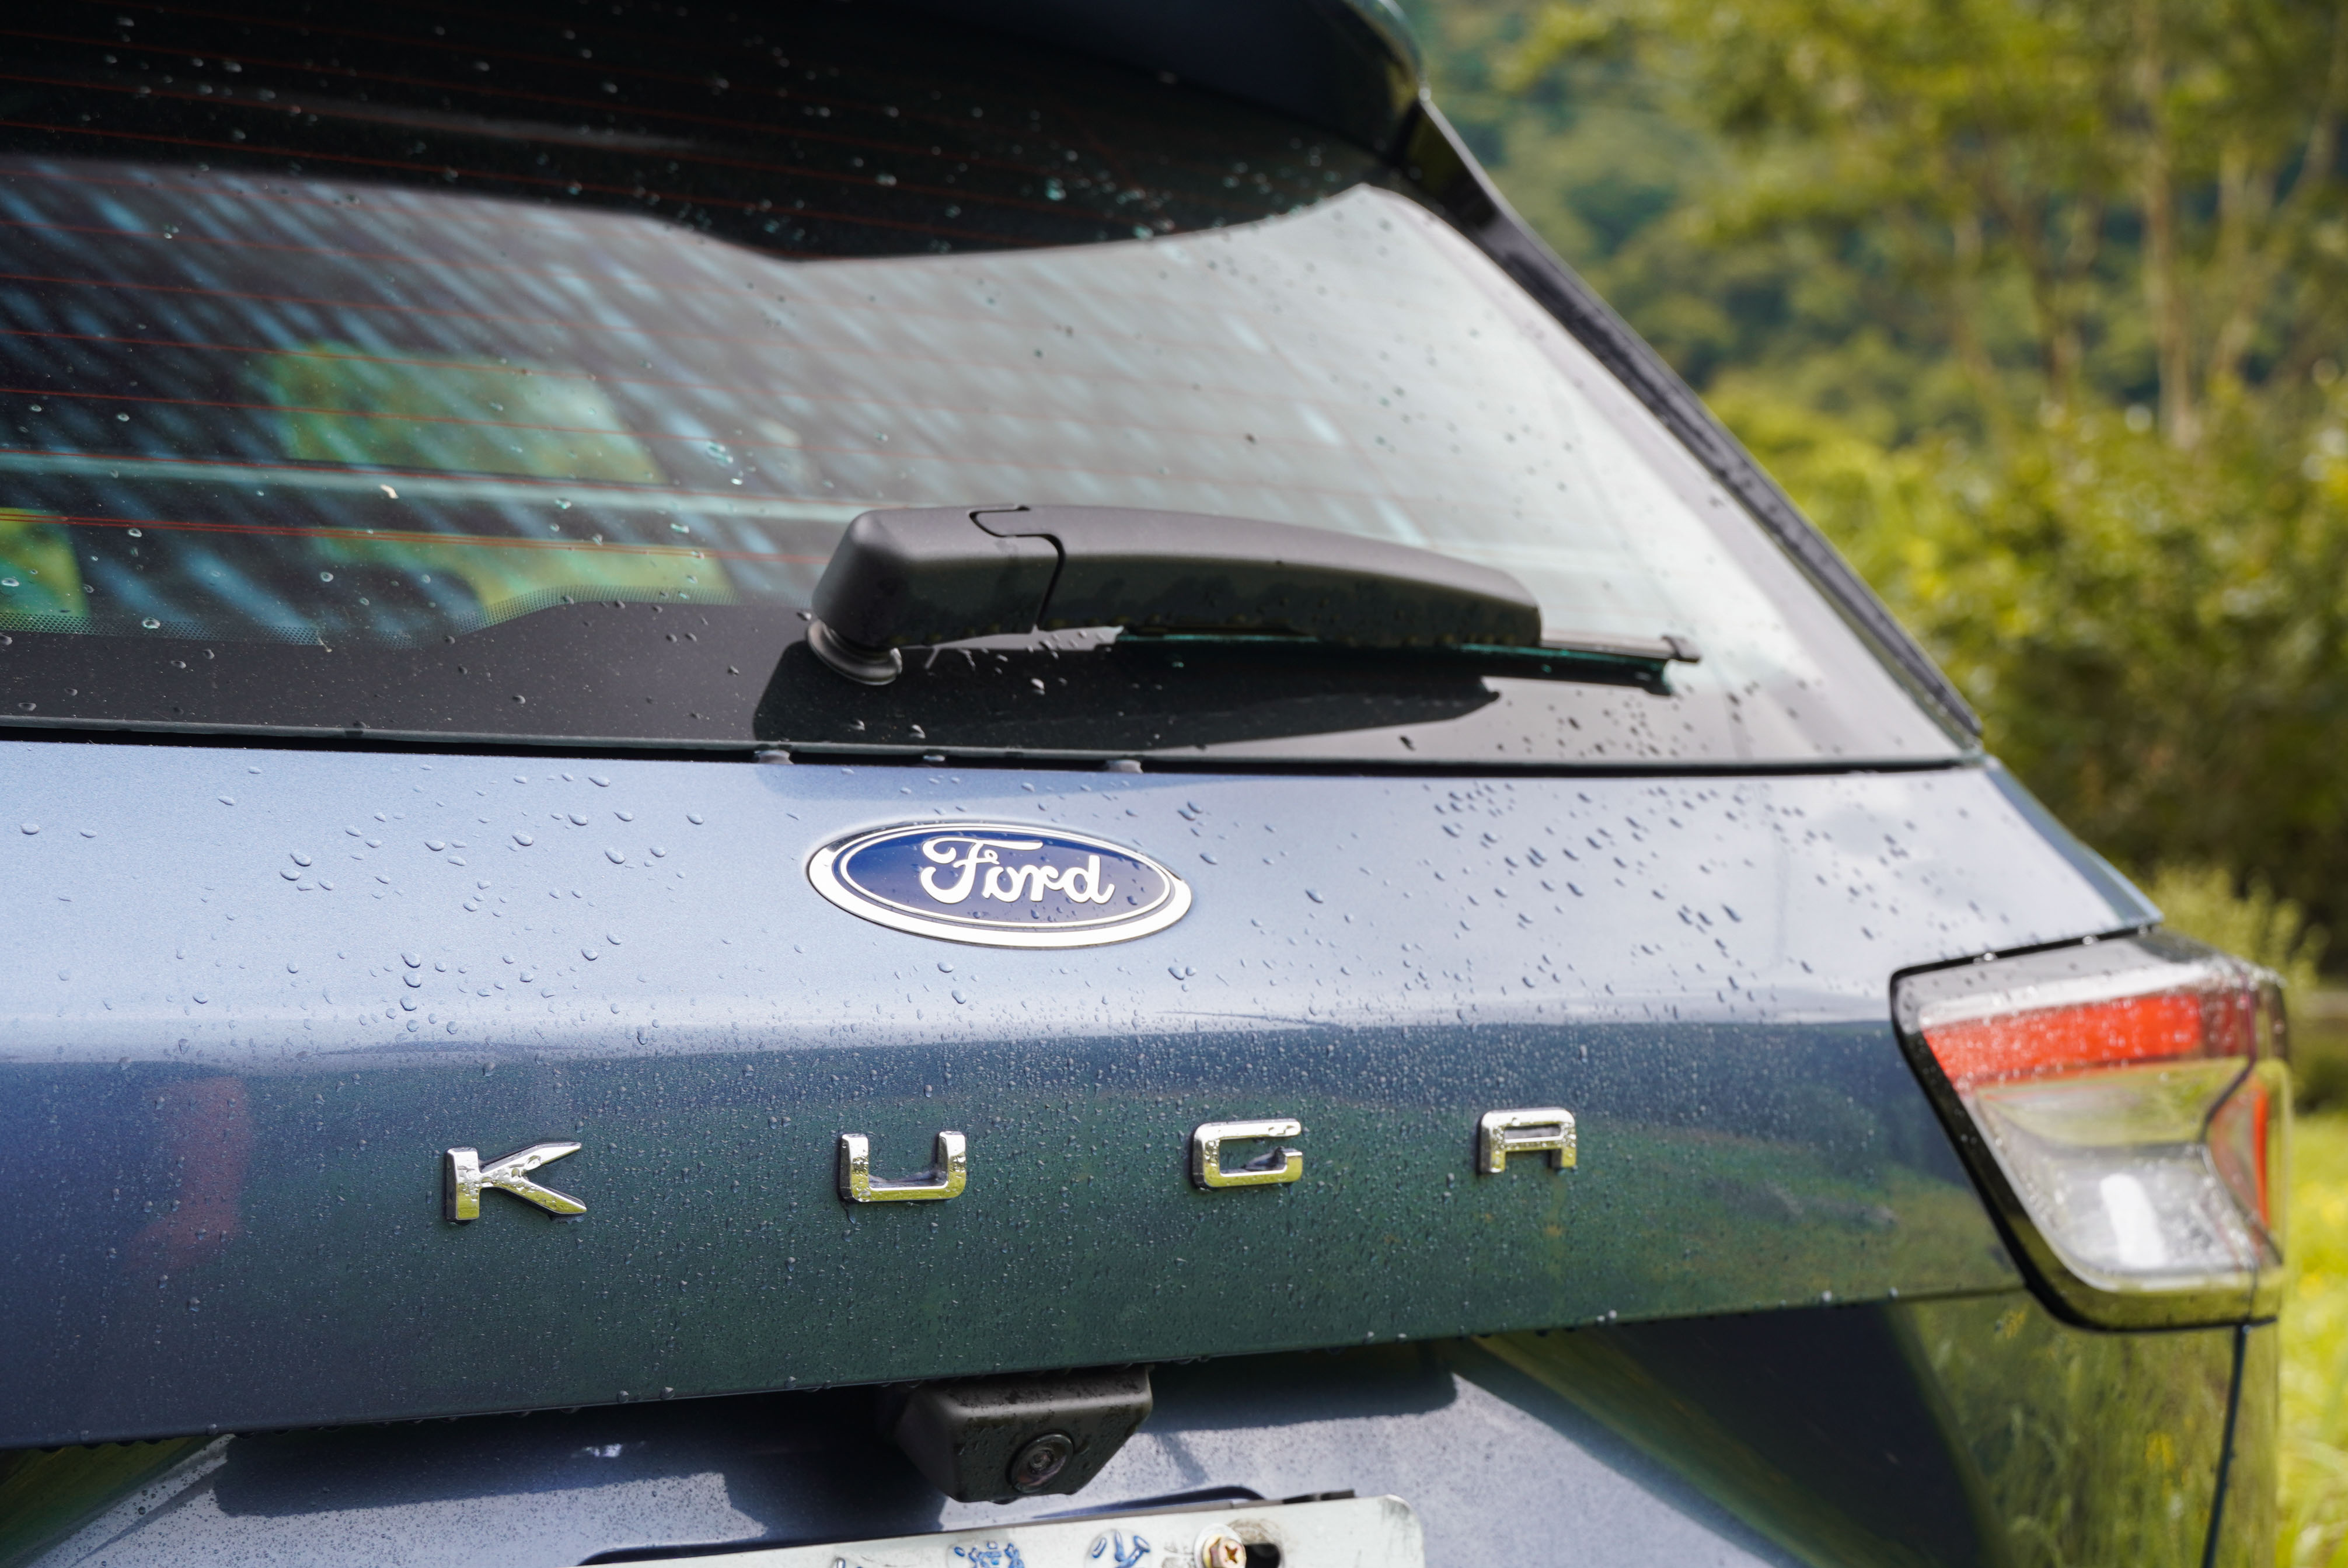 「KUGA」車名位位於廠徽正下方。